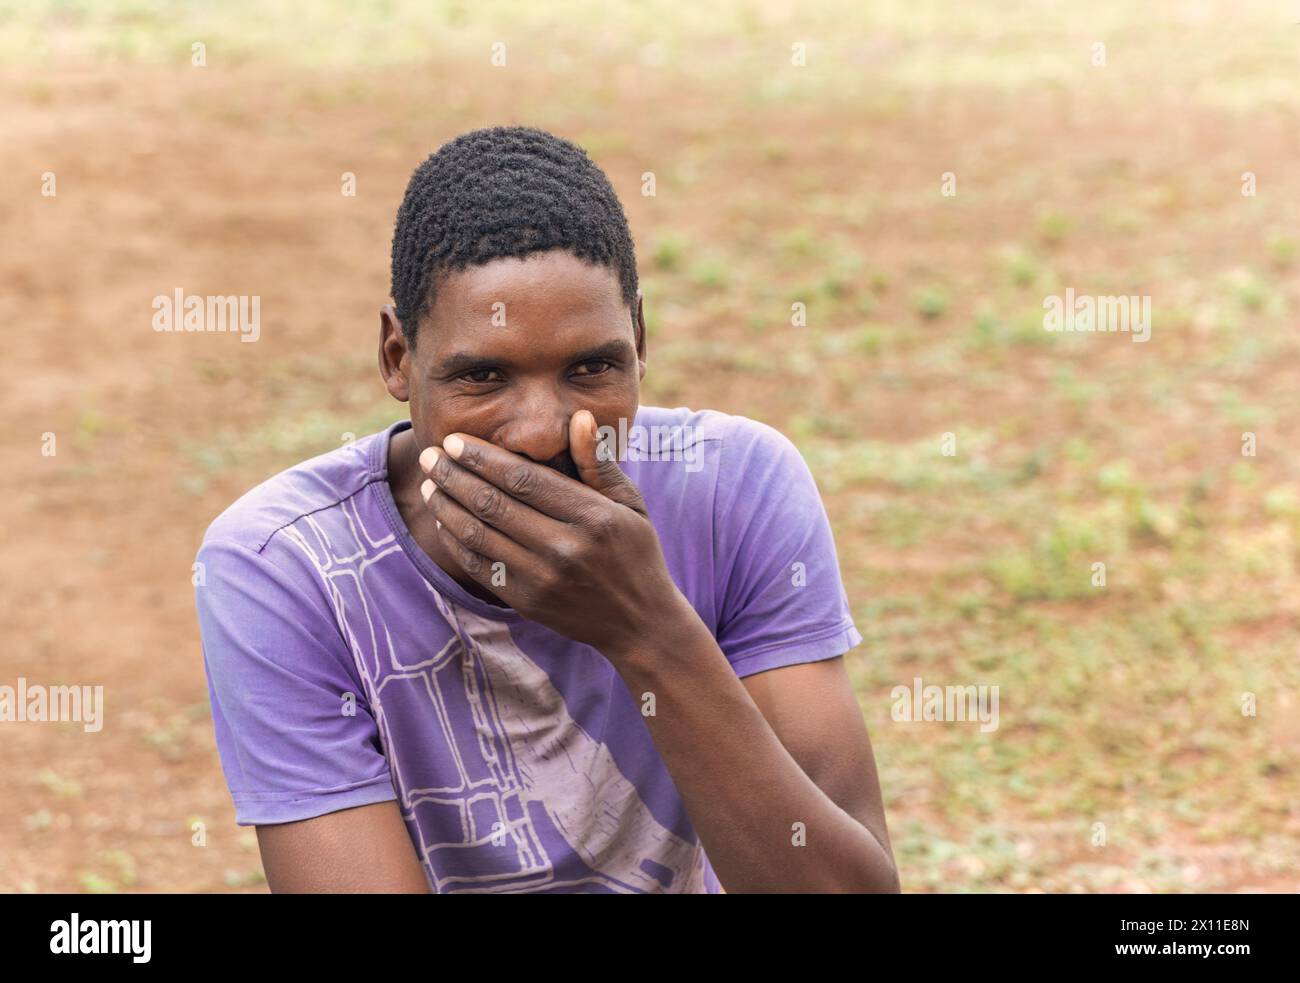 ritratto di un uomo africano che tiene la mano sulla bocca, reazione sorpresa, nel cortile del villaggio Foto Stock